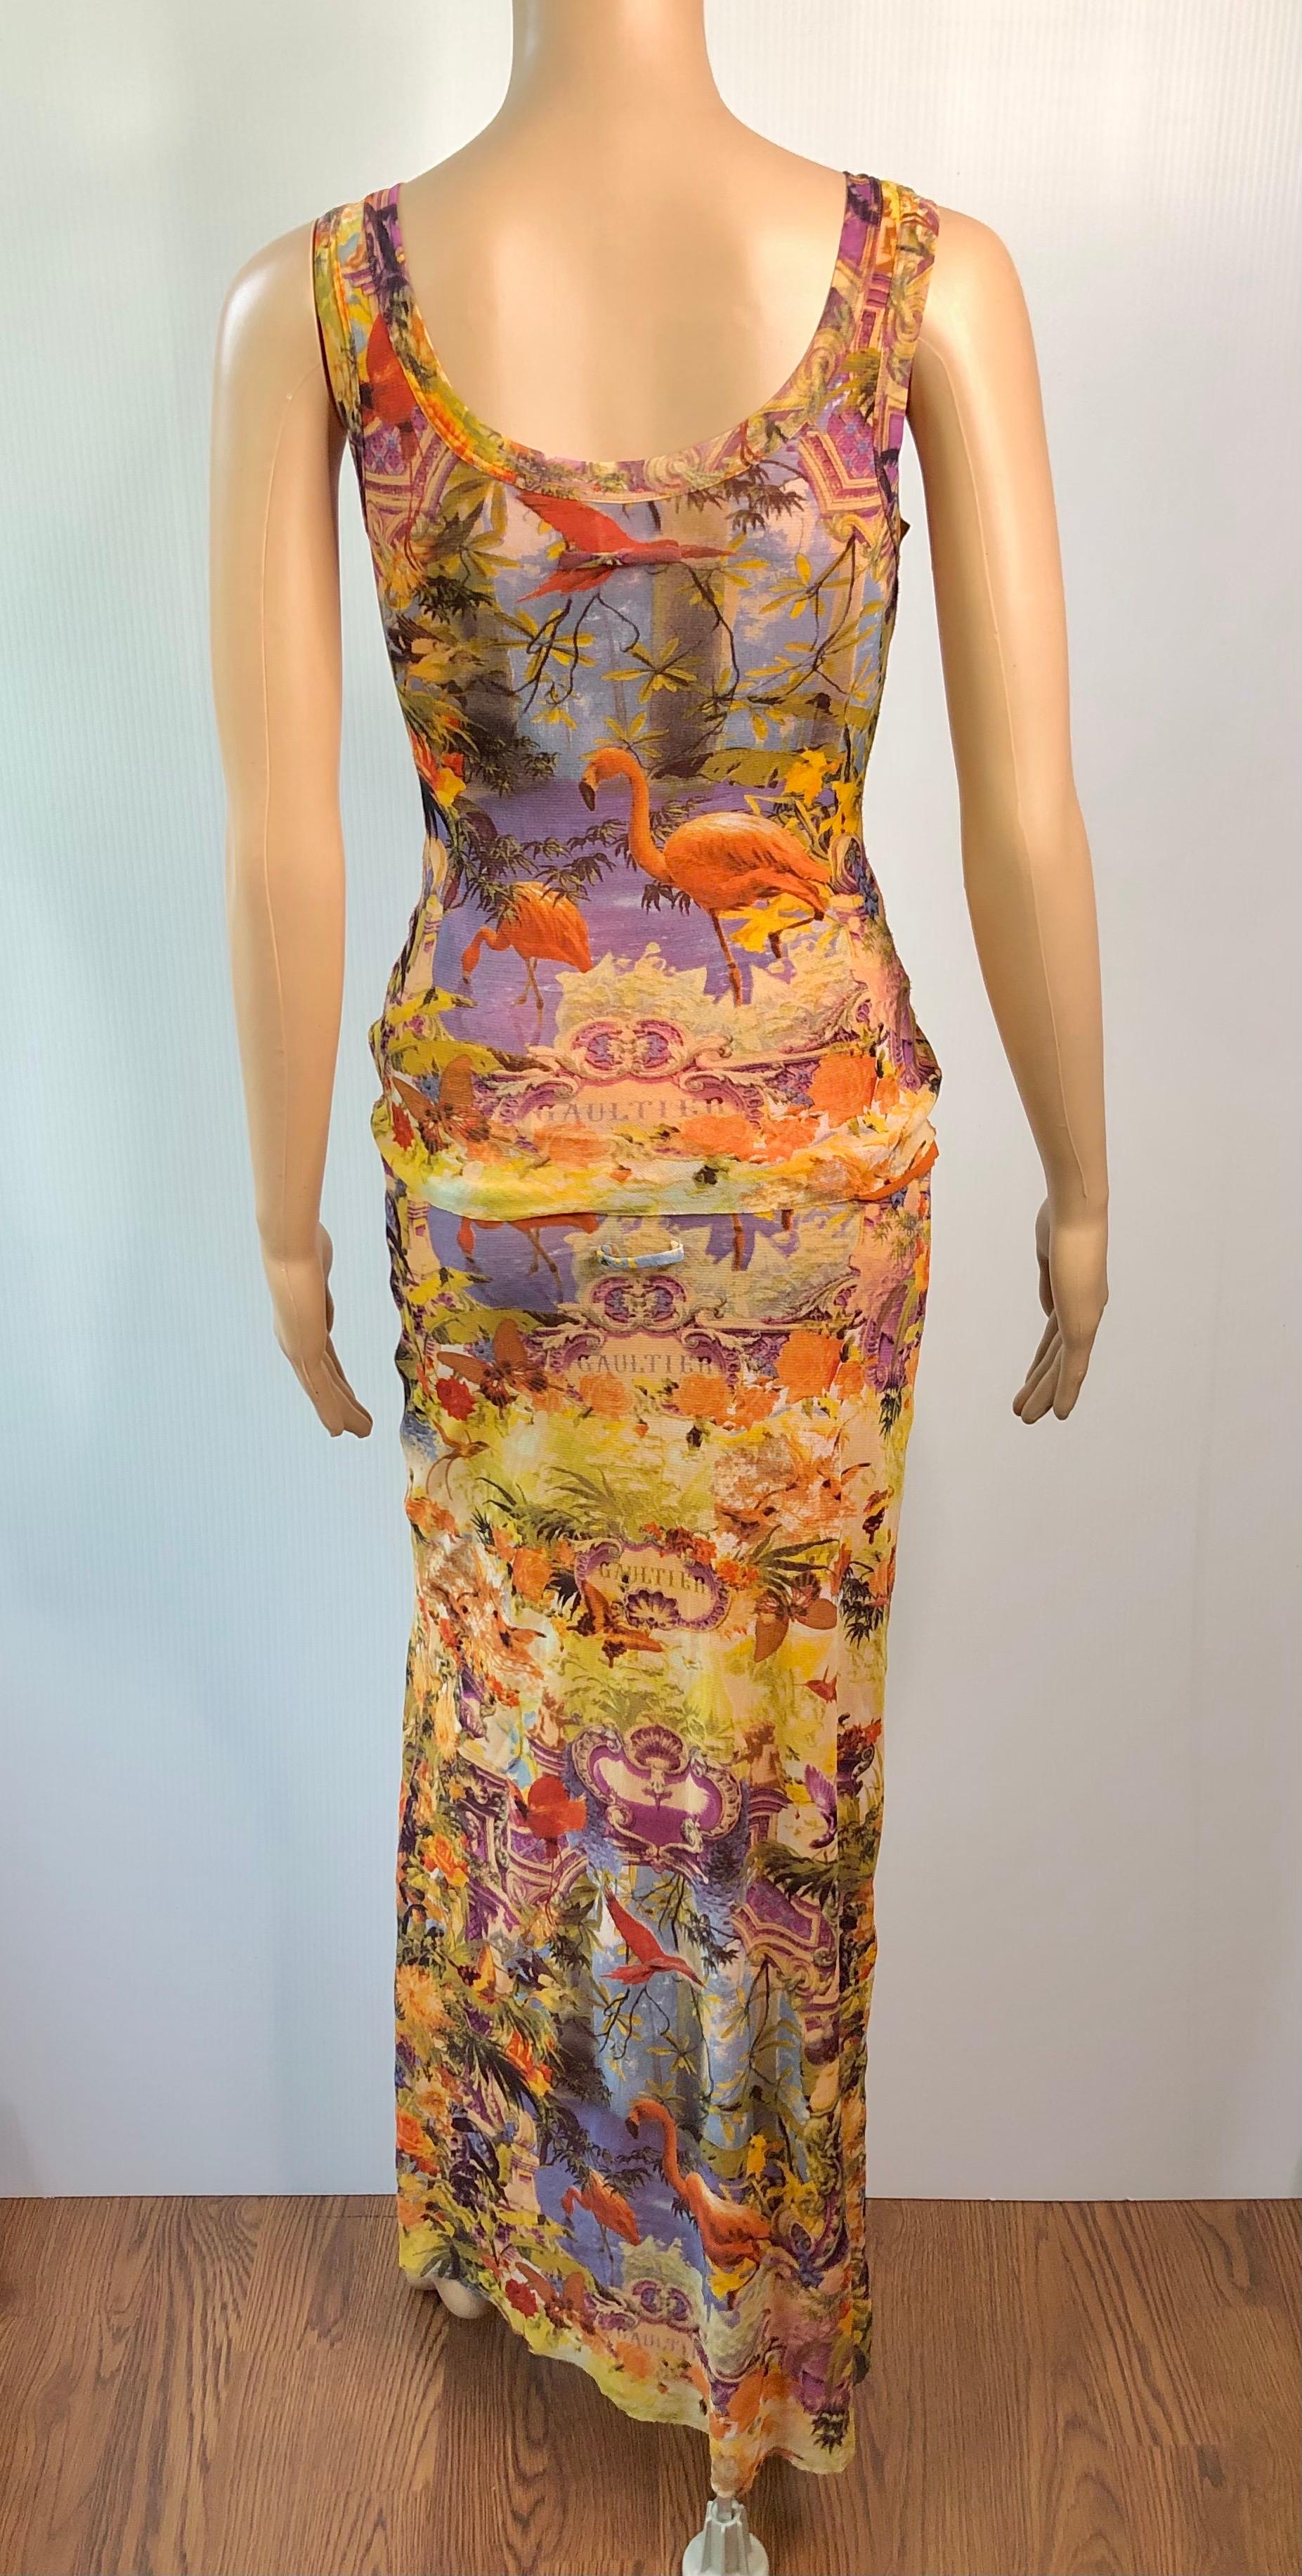 Jean Paul Gaultier Soleil Tropical Flamingo Print Sheer Mesh Top & Maxi Skirt Suit Ensemble 2 Piece Set Size S

